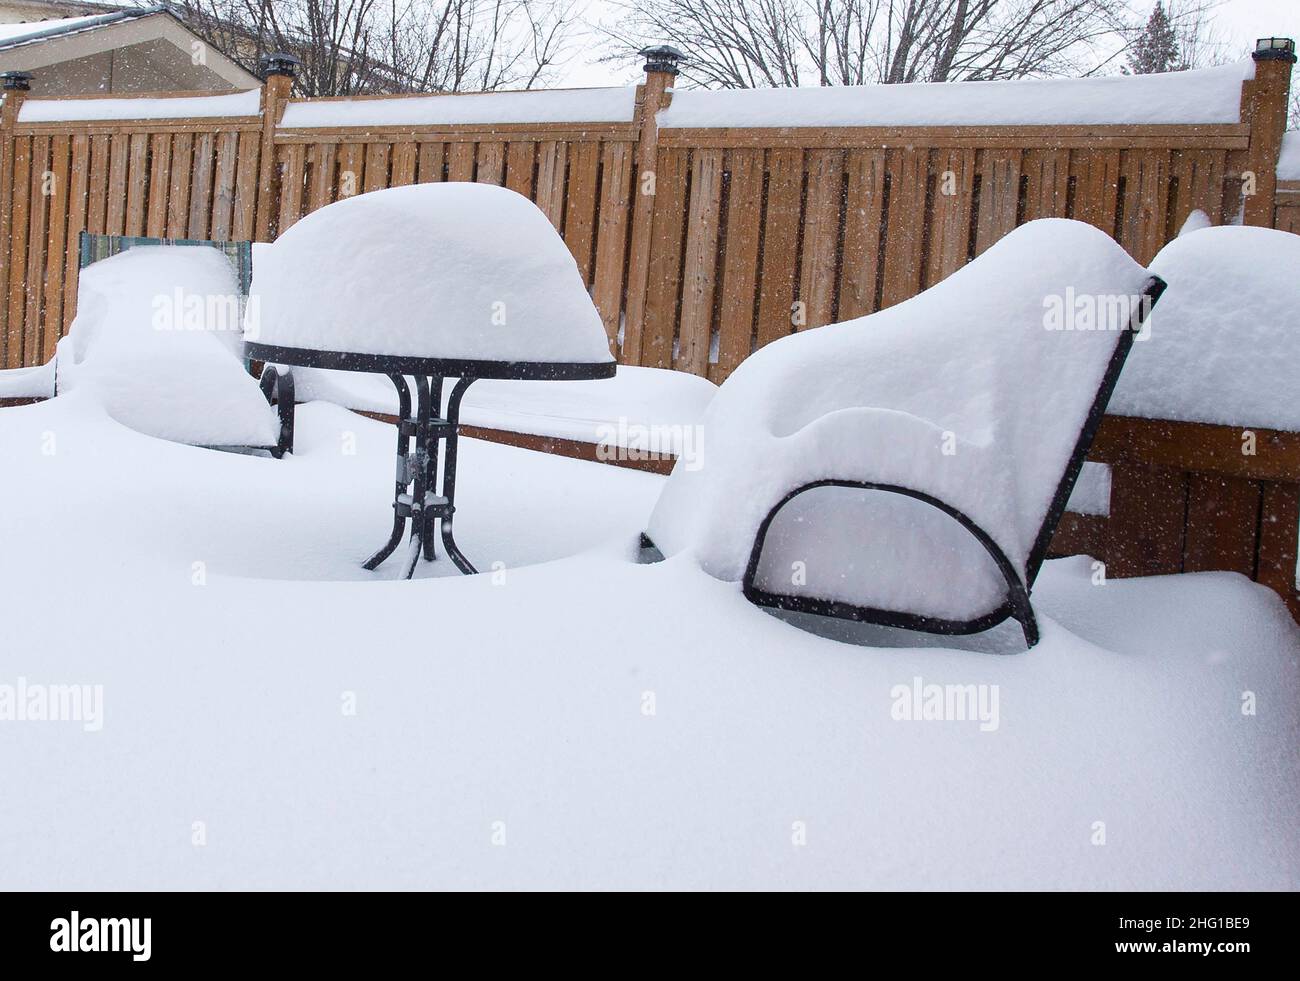 Mississauga, Kanada. 17th Januar 2022. Das am 17. Januar 2022 aufgenommene Foto zeigt einen mit Schnee bedeckten Tisch und Stühle auf einem Hof während eines verschneiten Tages in Mississauga, dem Großraum Toronto, Kanada. Environment Canada gab in der Nacht zum Montag eine Wintersturmwarnung heraus, in der in einigen Teilen des Großraums Toronto bis zu 60 cm Schnee gefordert wurden. Quelle: Zou Zheng/Xinhua/Alamy Live News Stockfoto